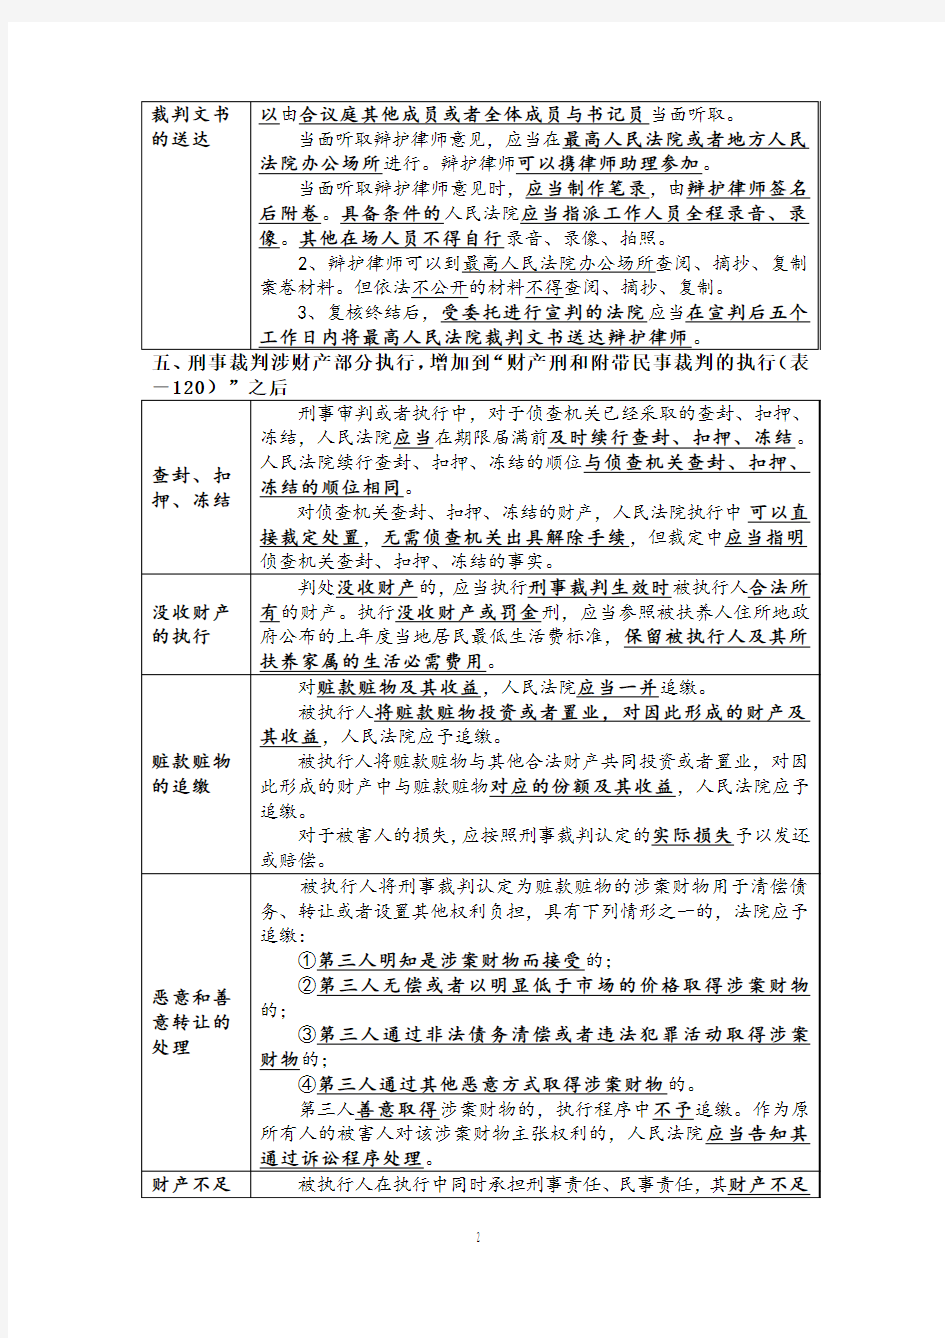 刑诉法128表补充讲义(15年新增考点和重点法条解读)——杨雄 (1)